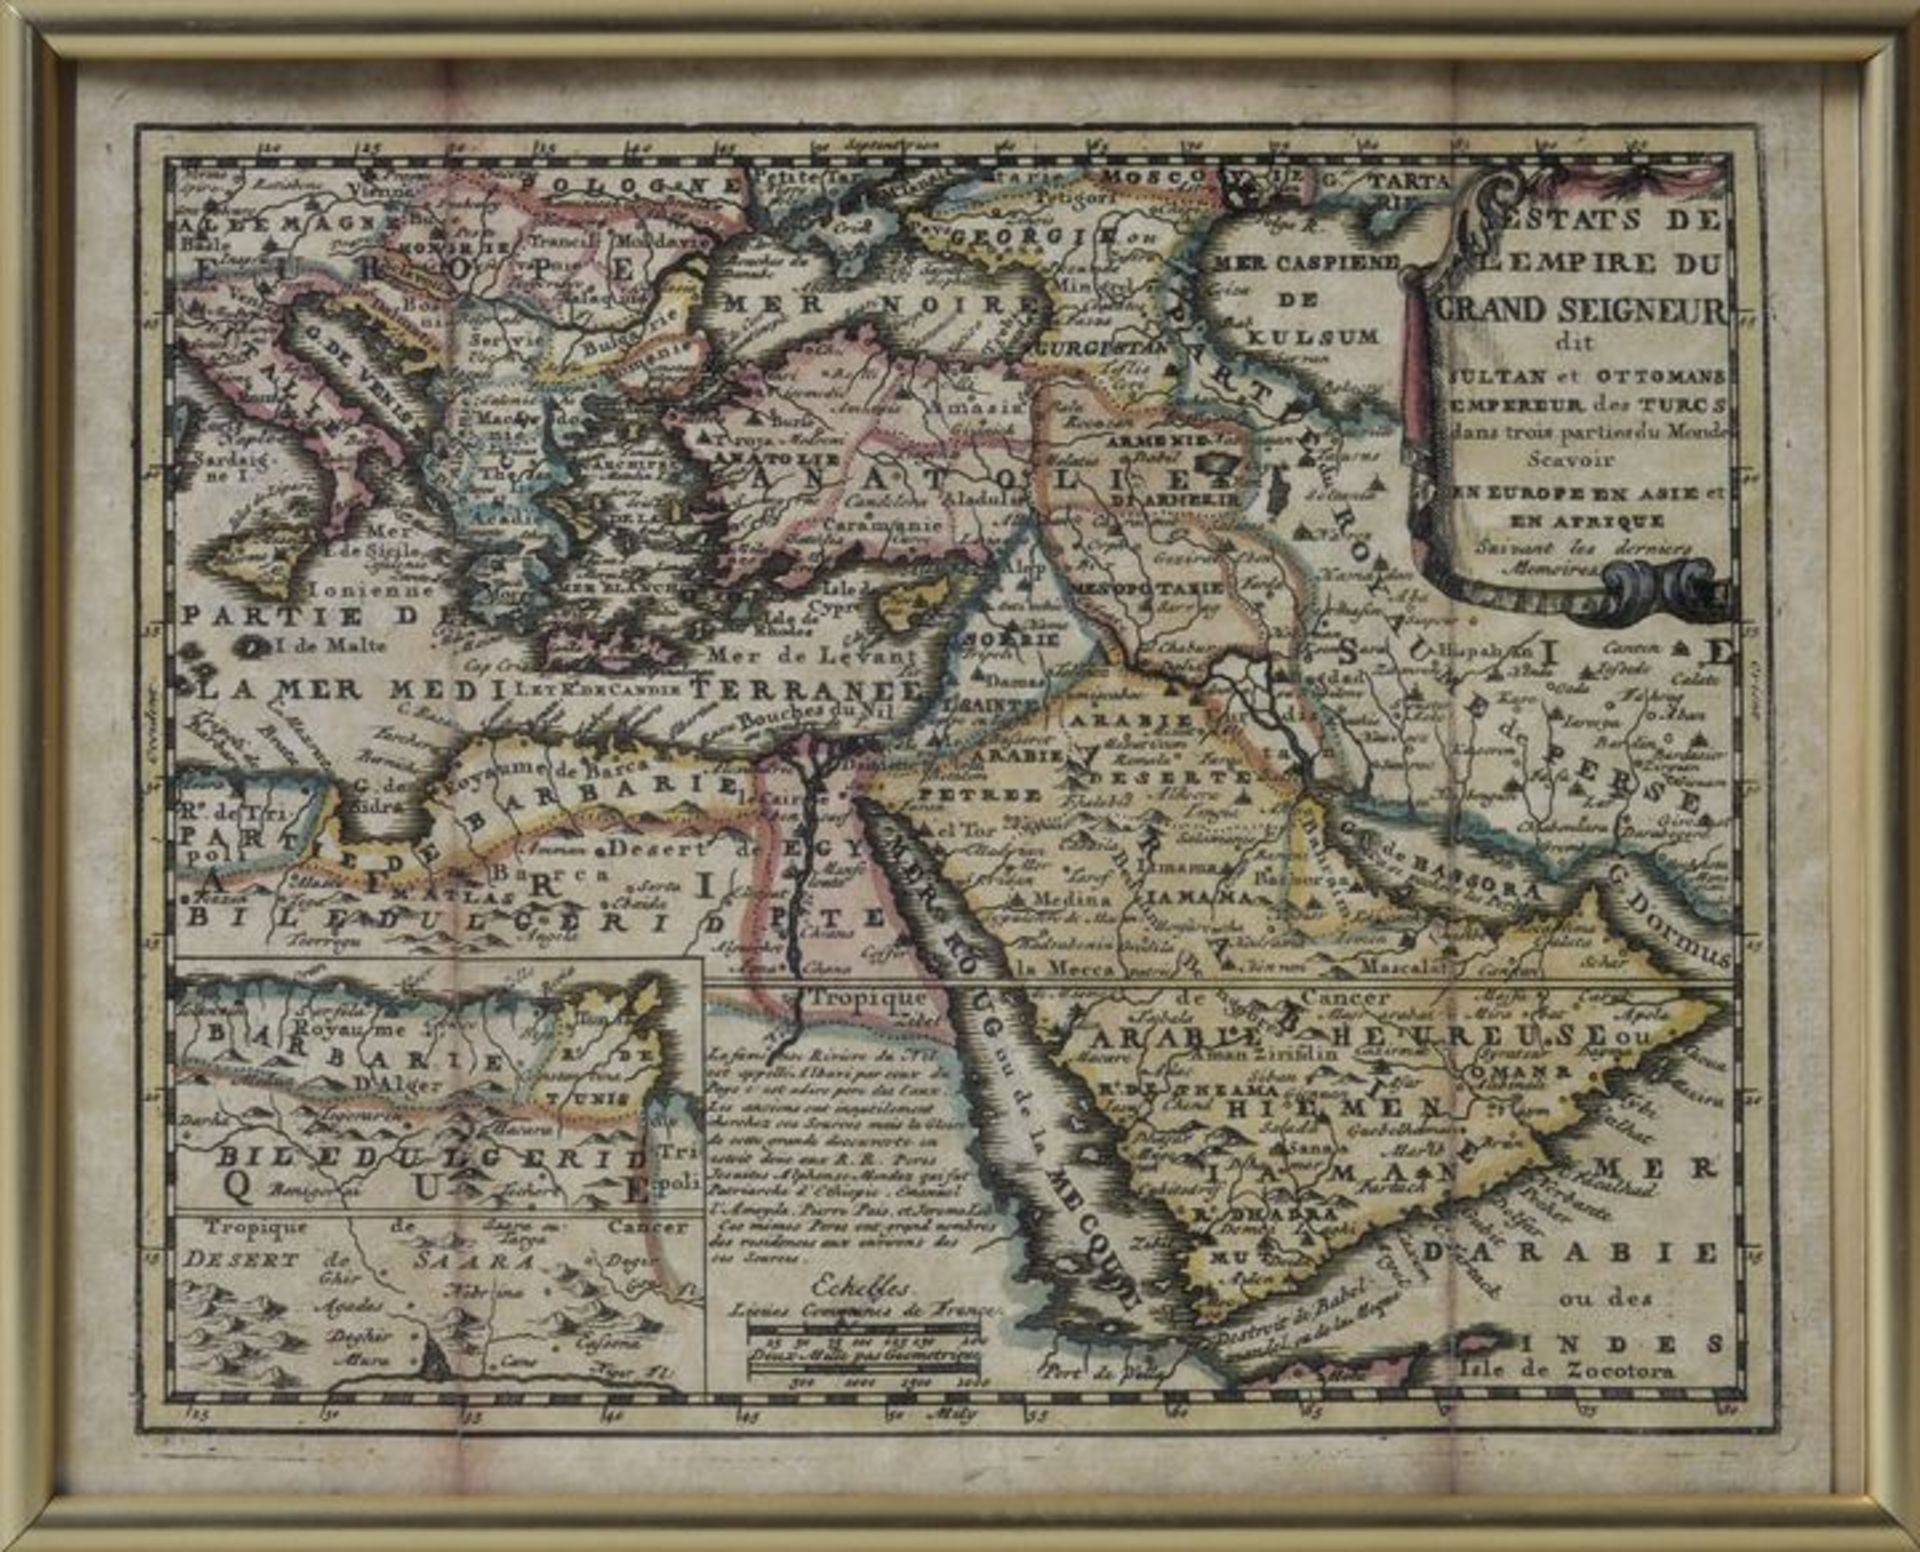 Karte von Arabien: "Estats de L'Empire du Grand Seigneur dit Sultan et Ottomans (...)",